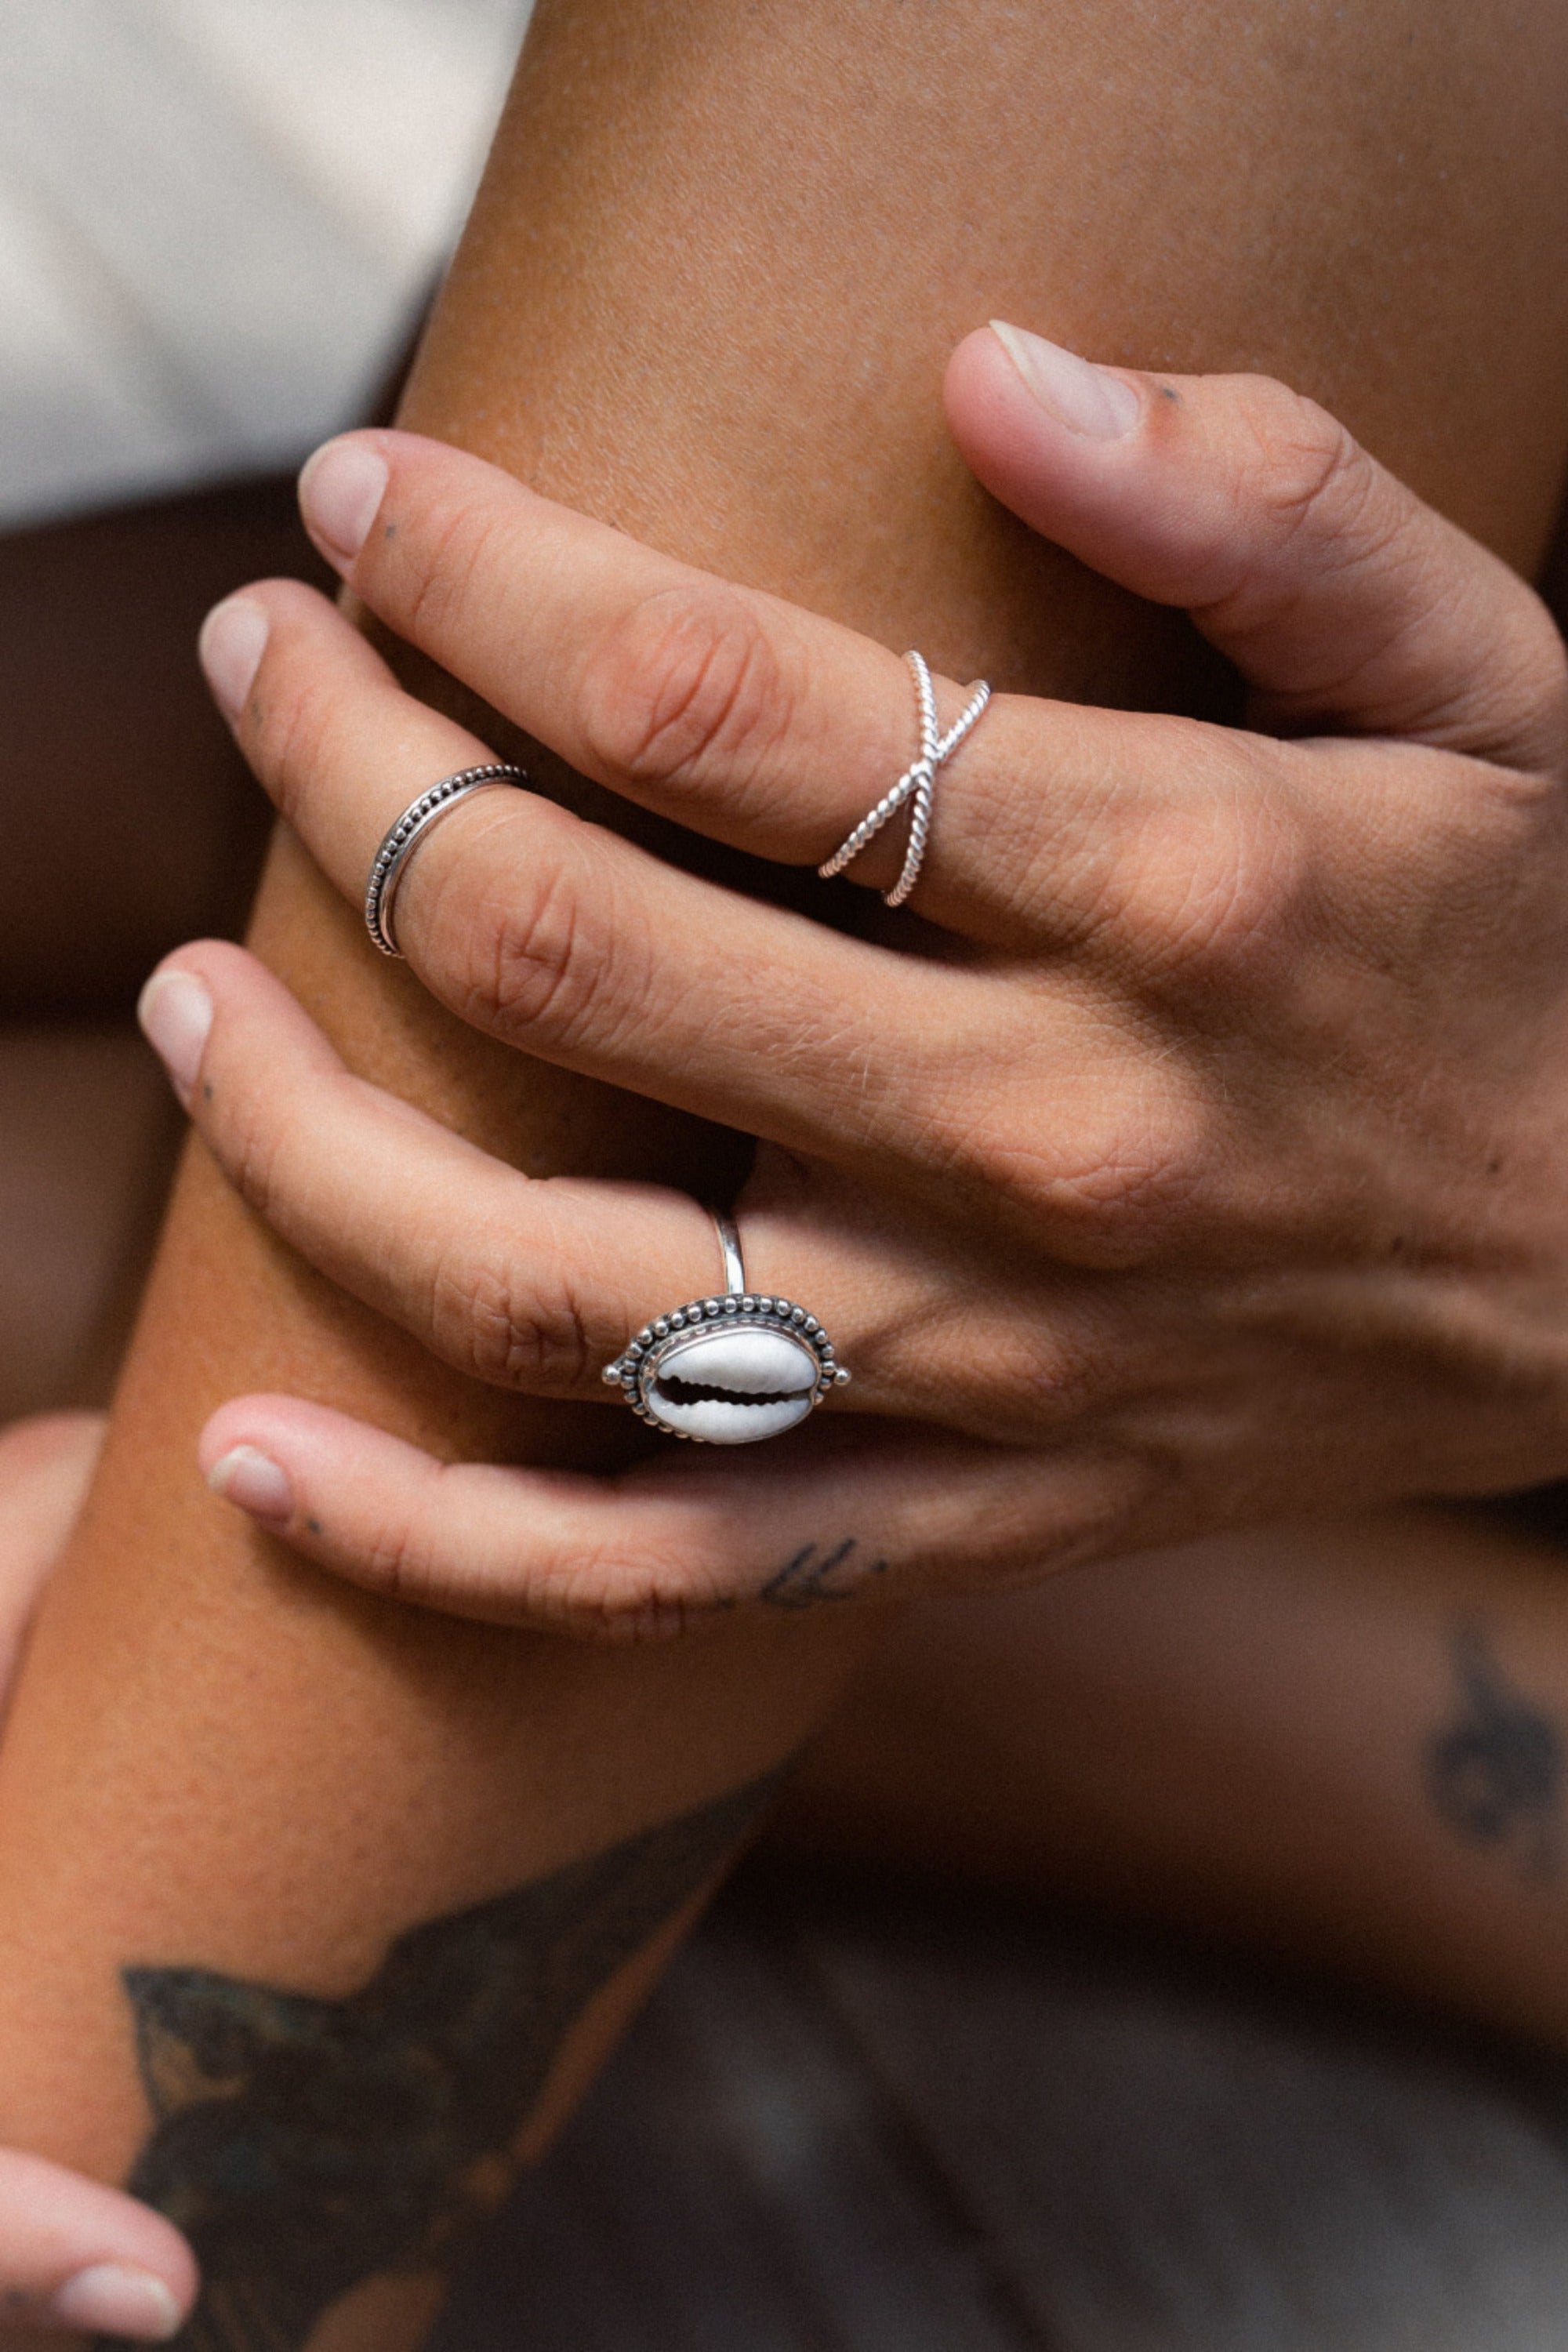 Handmade with love | VERLAN Jewellery | Fairfashion | Handgemachte Ringe im Boho Look aus Bali | Fair und nachhaltig handgefertigter Schmuck | 925 Sterlingsilber | SINGLE FIN Ring | PANDAWA Ring verstellbar